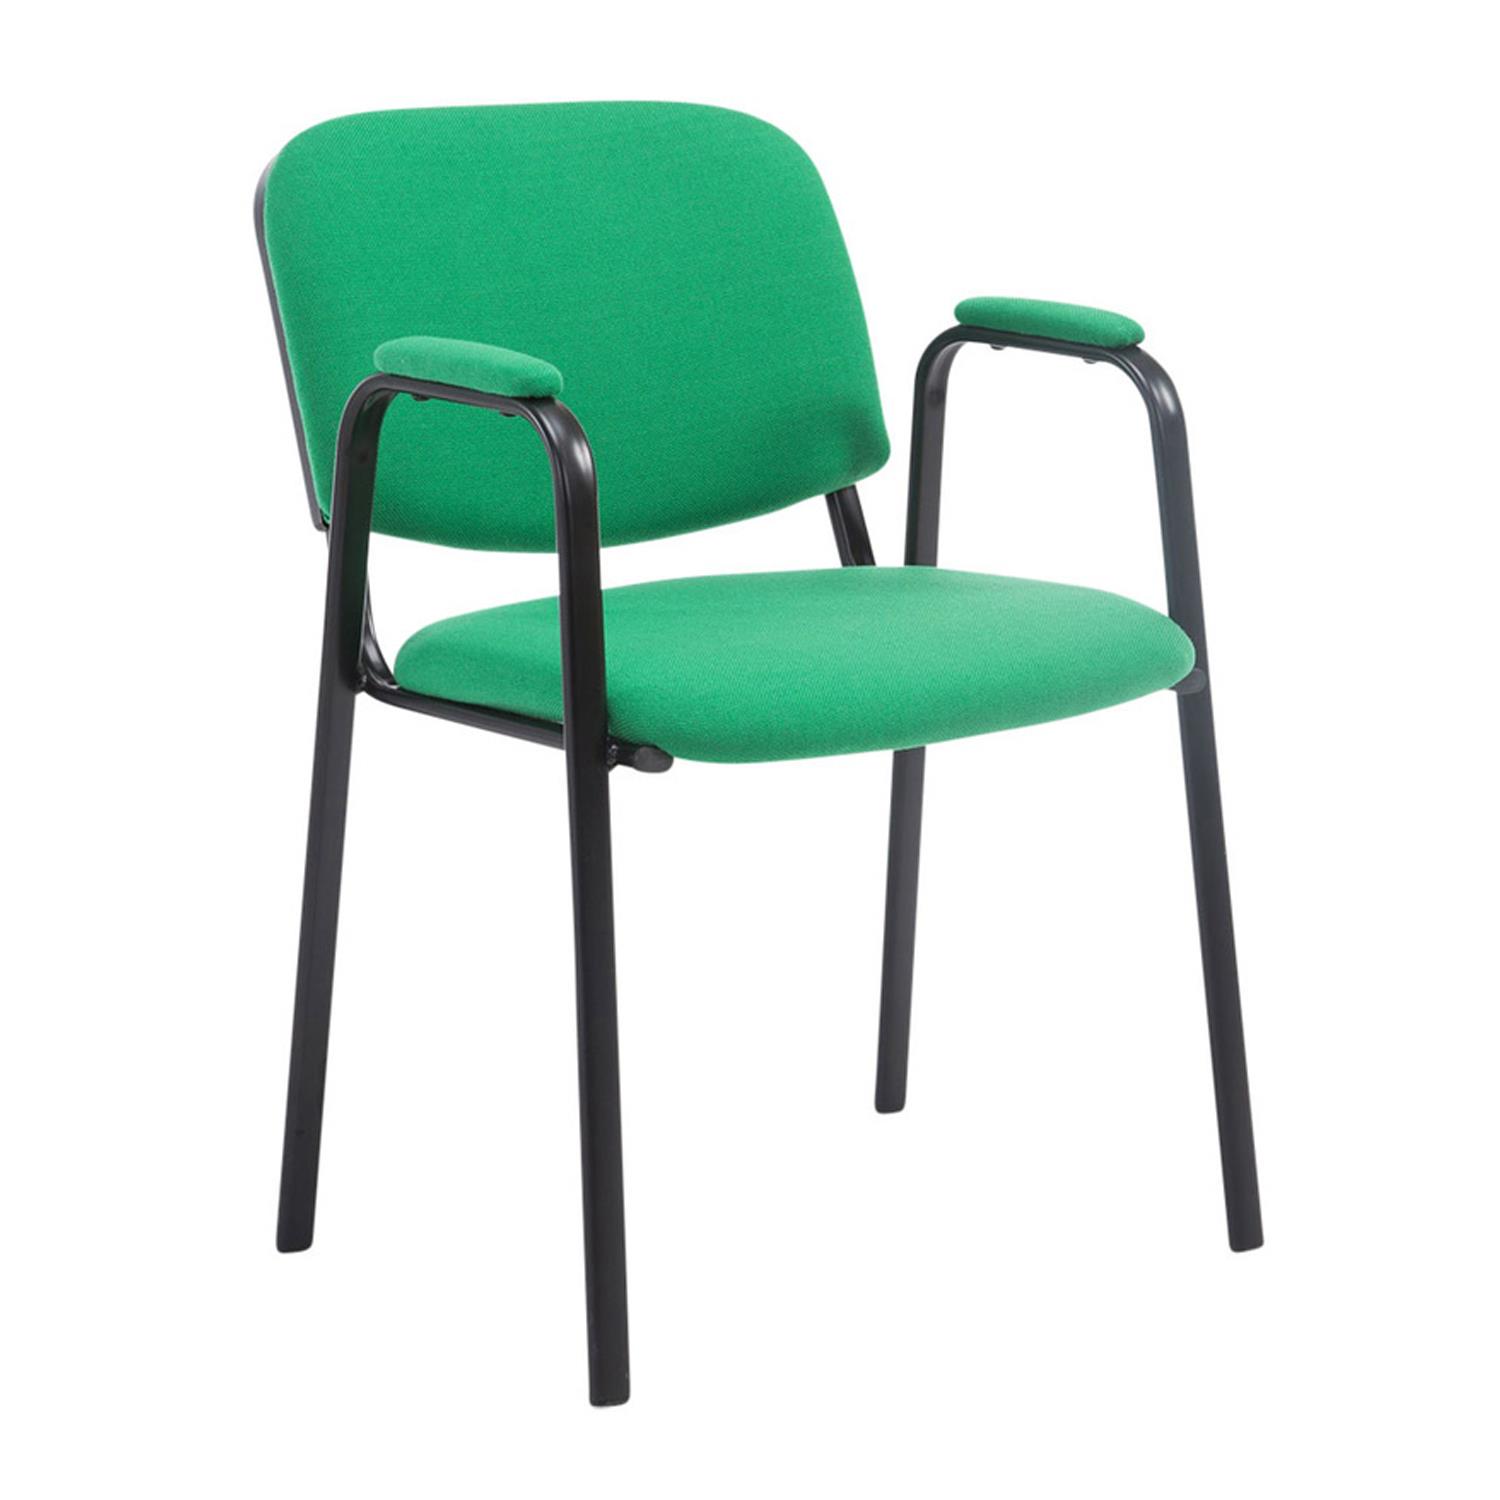 Cadeira de Visita MOBY COM BRAÇOS, Conforto, Pernas Pretas, Cor Verde